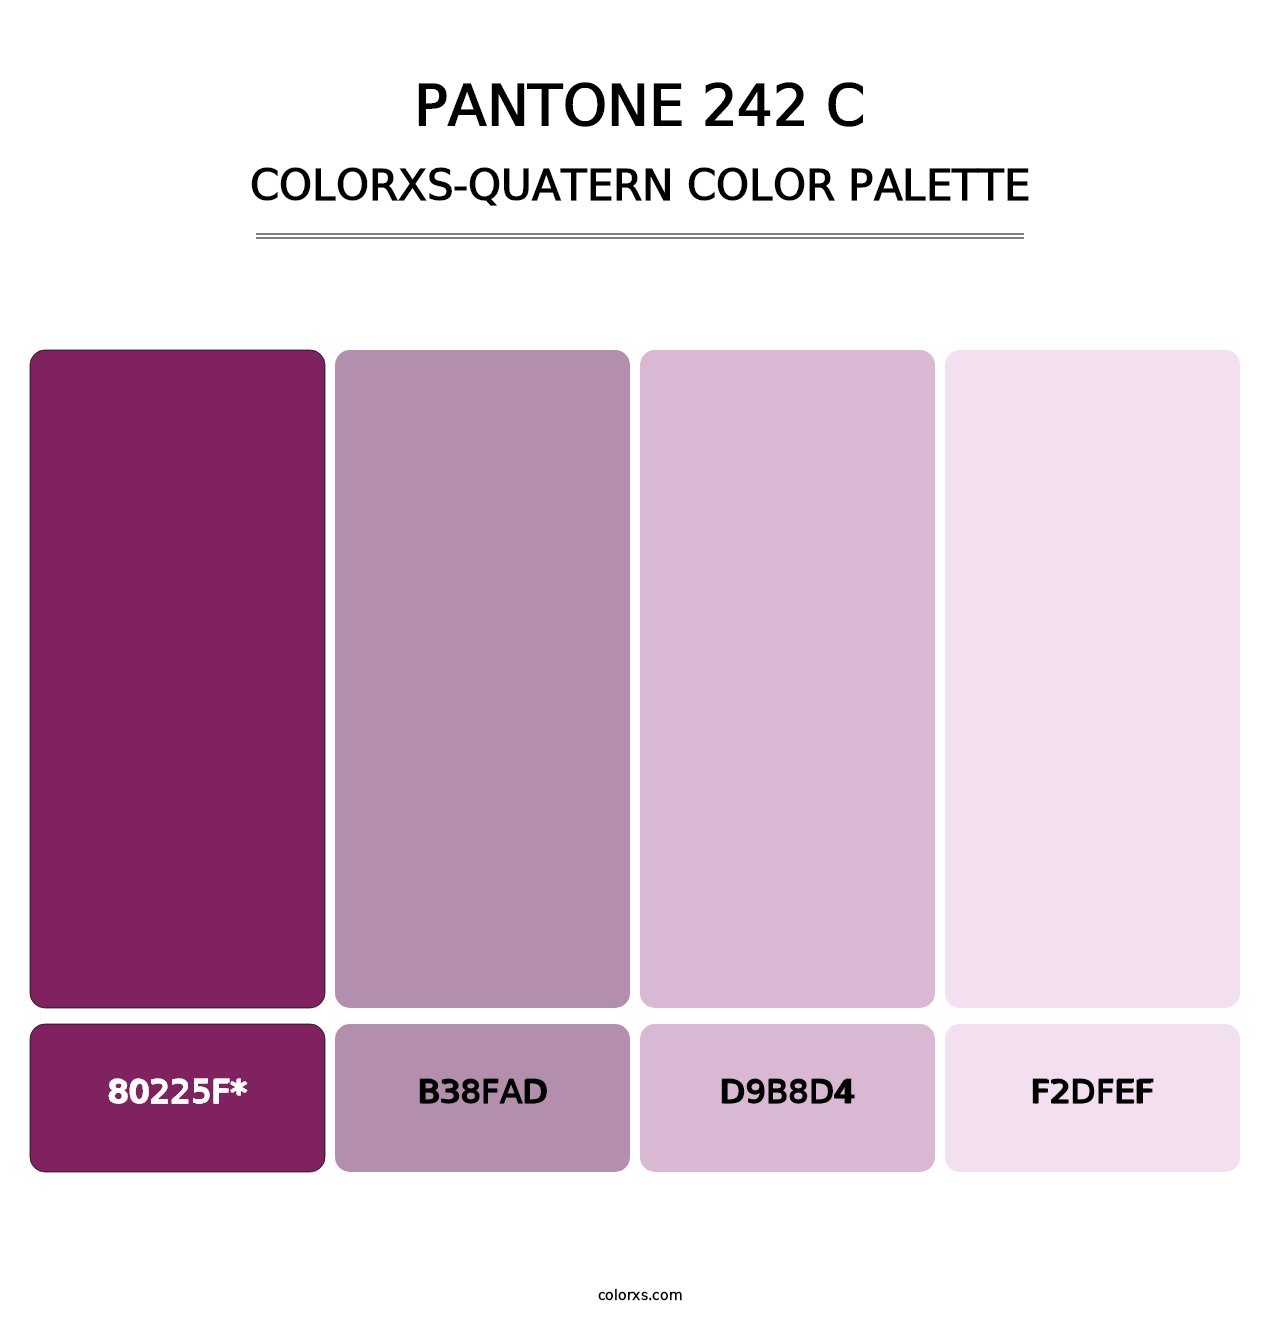 PANTONE 242 C - Colorxs Quatern Palette